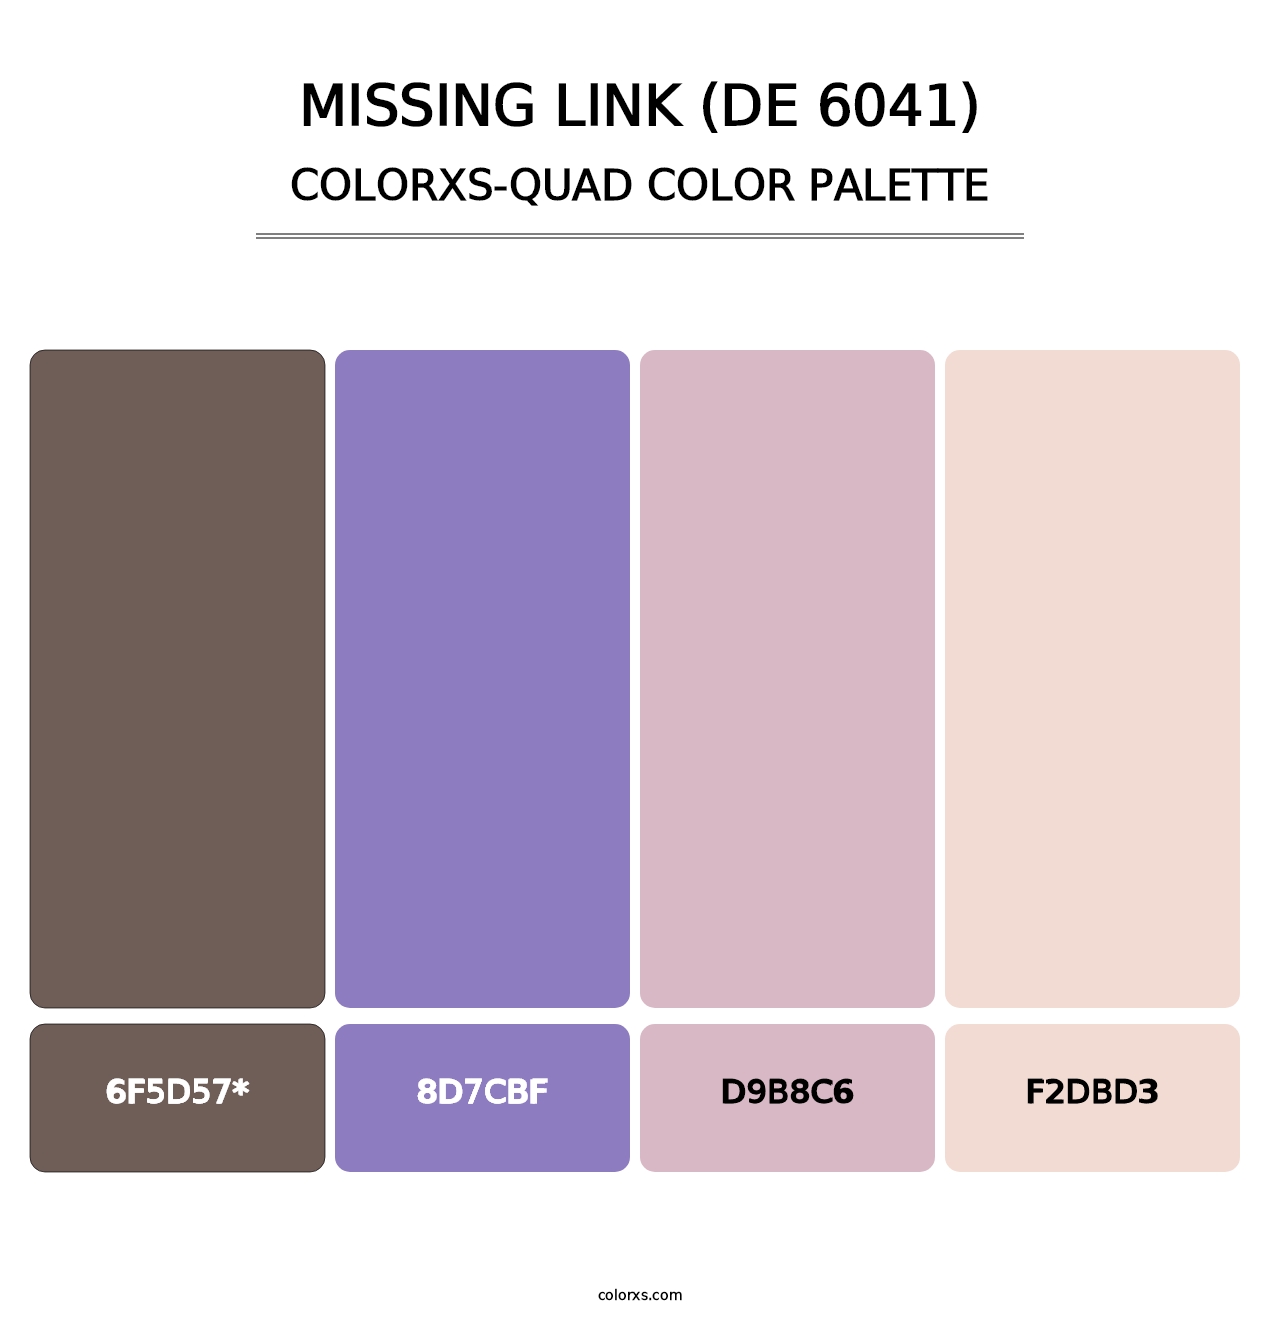 Missing Link (DE 6041) - Colorxs Quad Palette